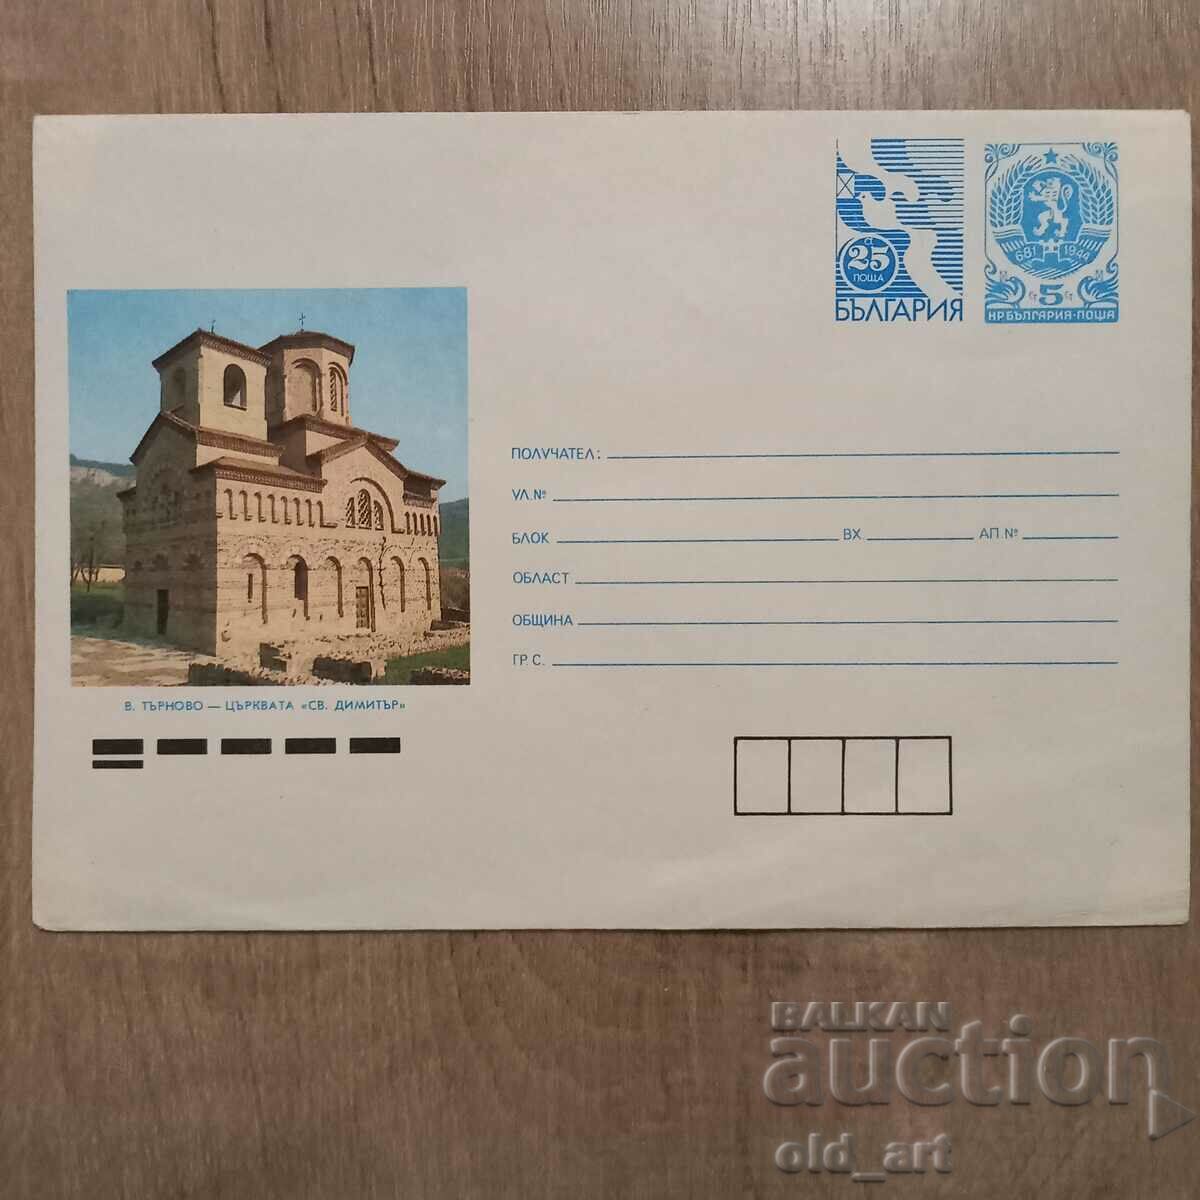 Ταχυδρομικός φάκελος - Εκκλησία Αγ. Δημήτρης